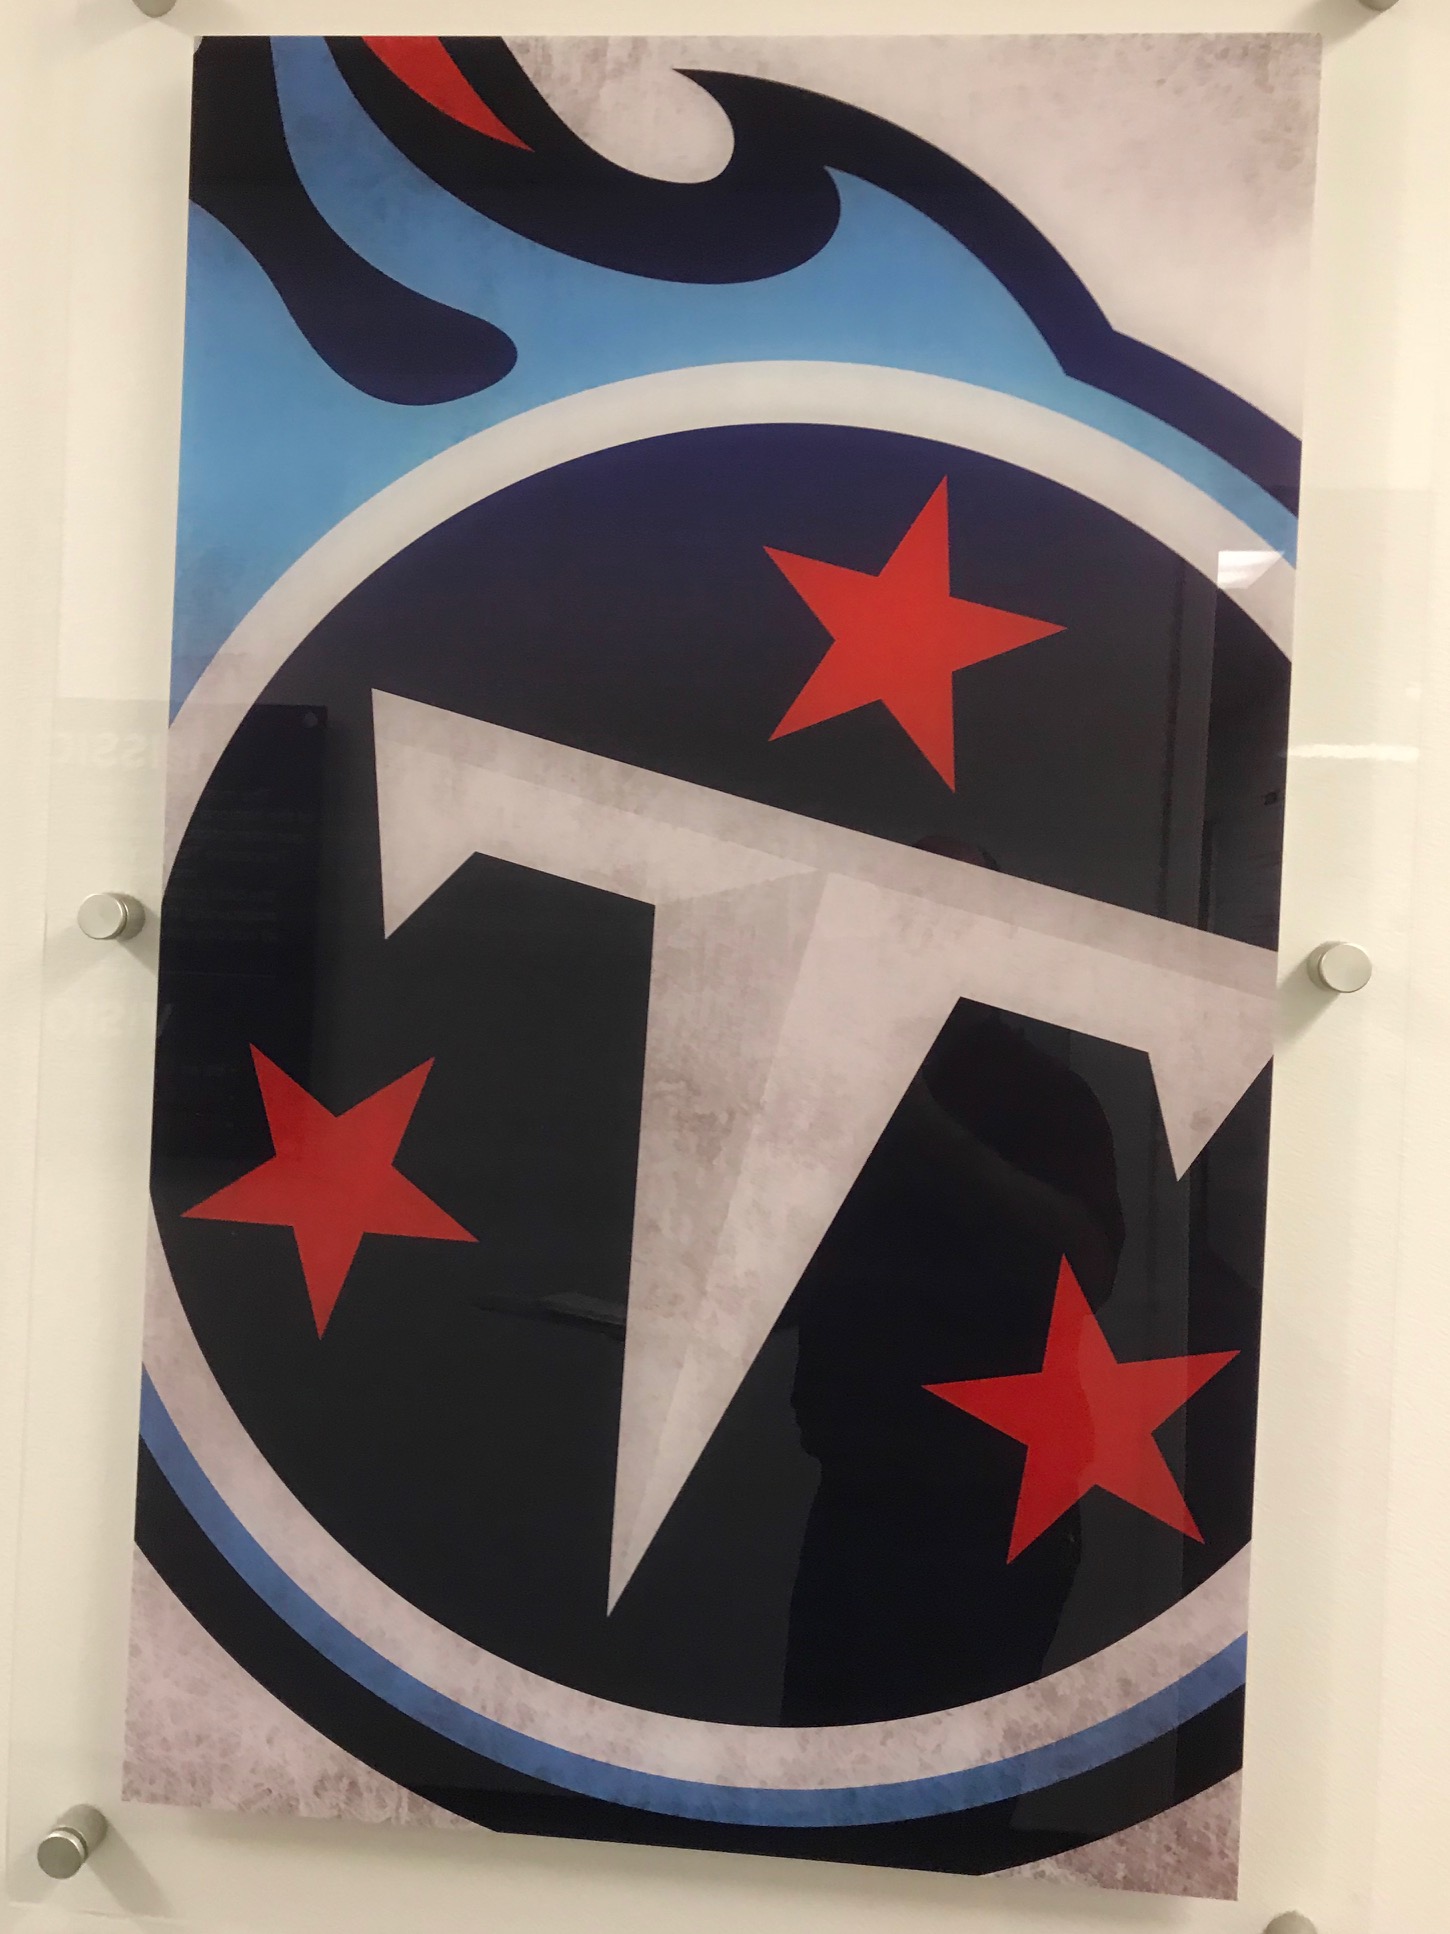 Titans logo